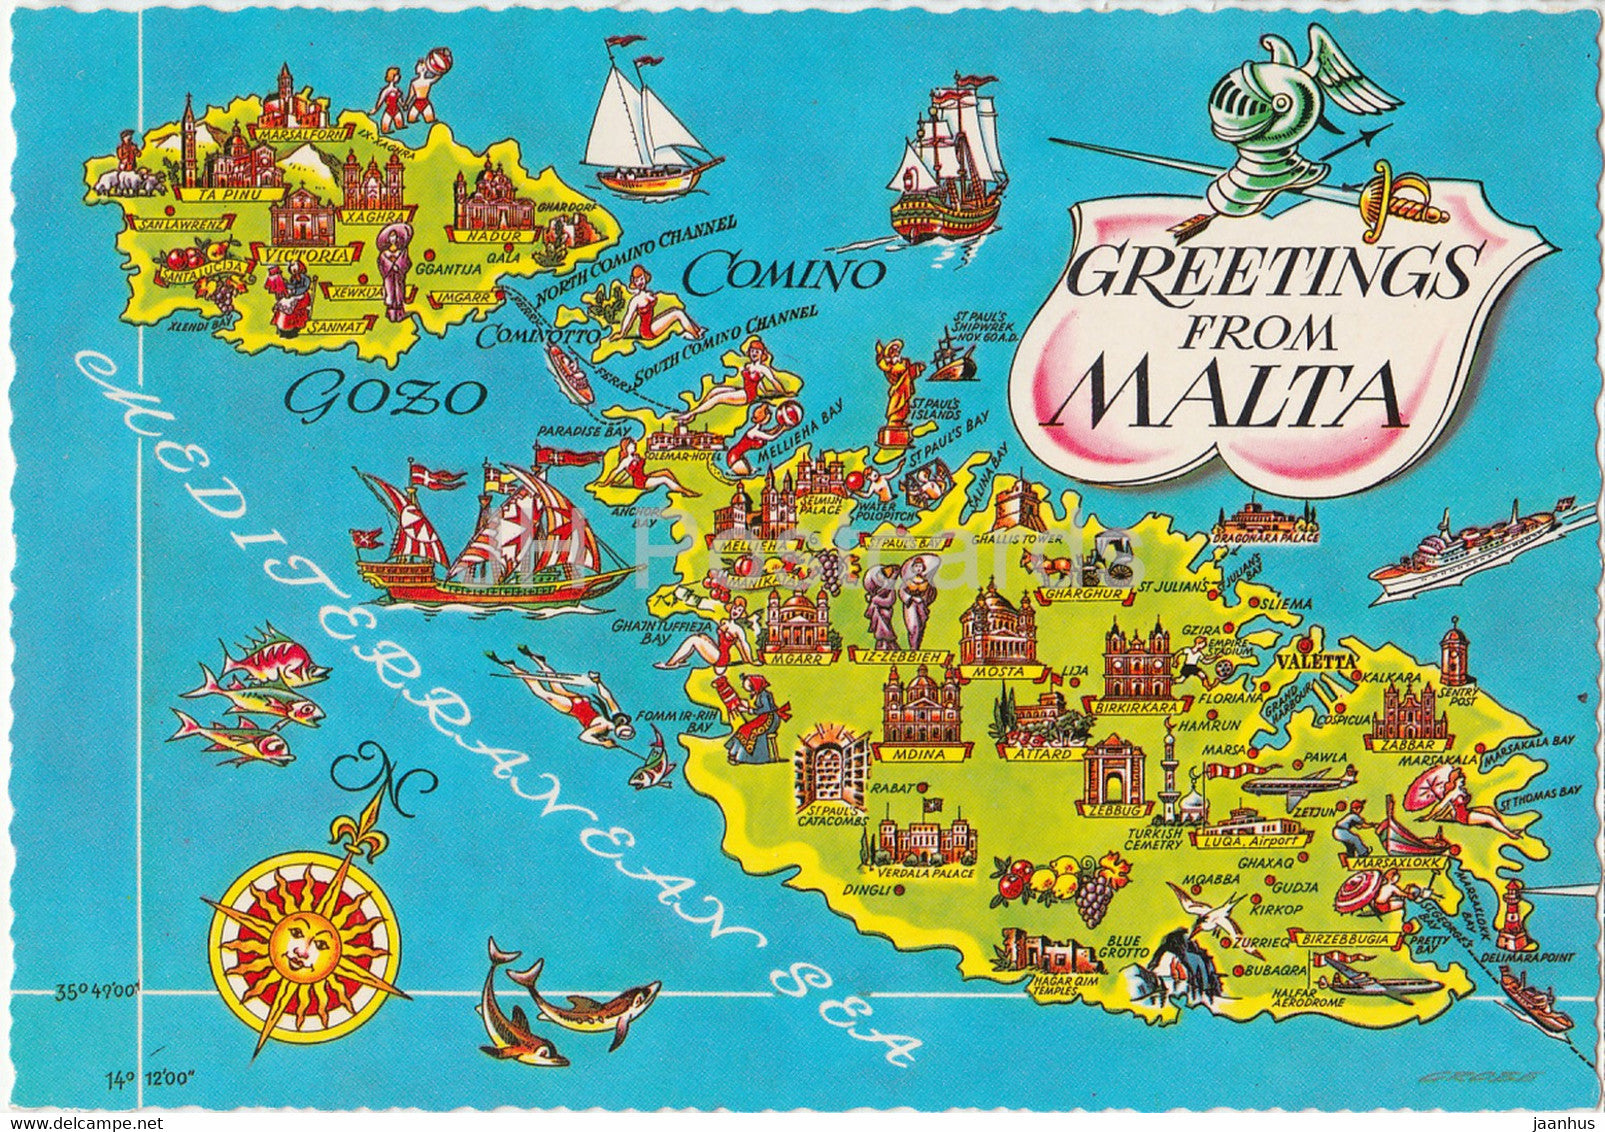 Greetings from Malta - map - Malta - unused - JH Postcards